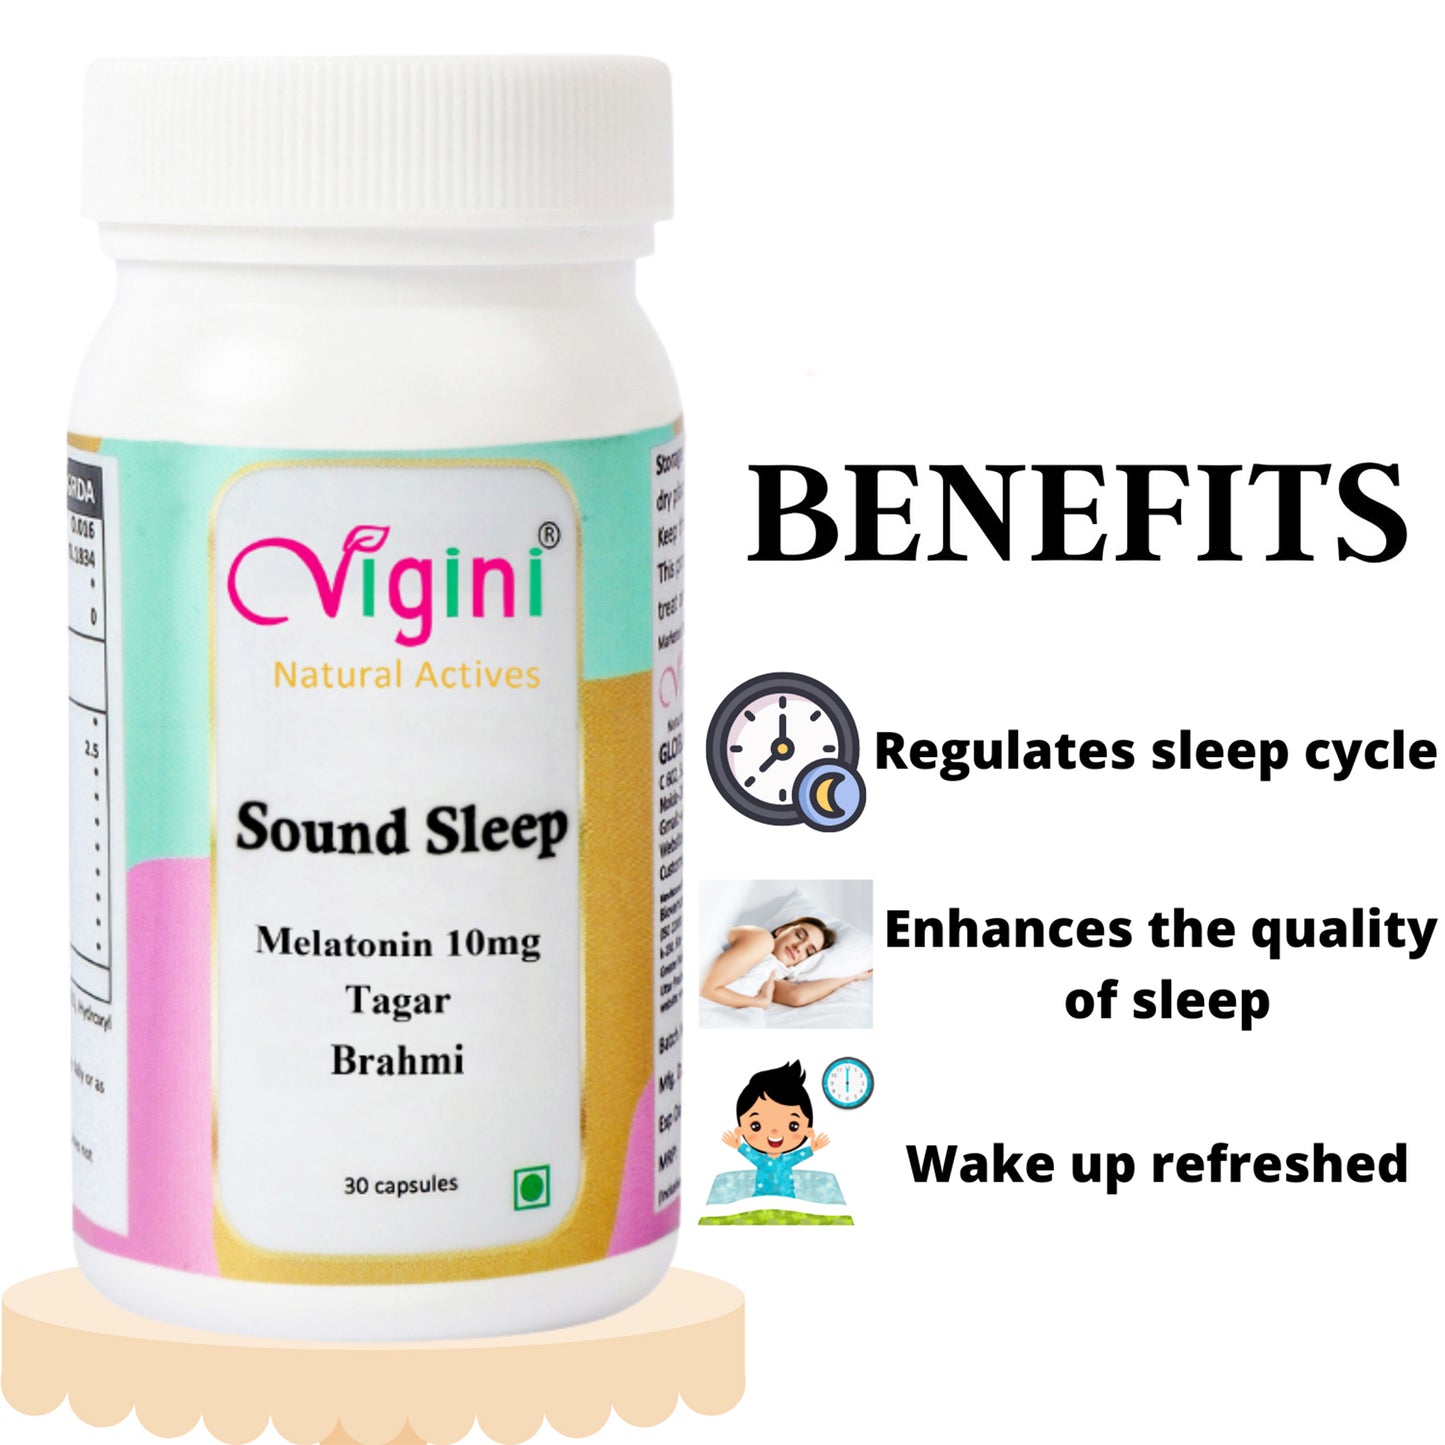 Vigini Melatonin 10mg Sleeping Capsule for Healthy Sleep Cycle, 30 Capsules